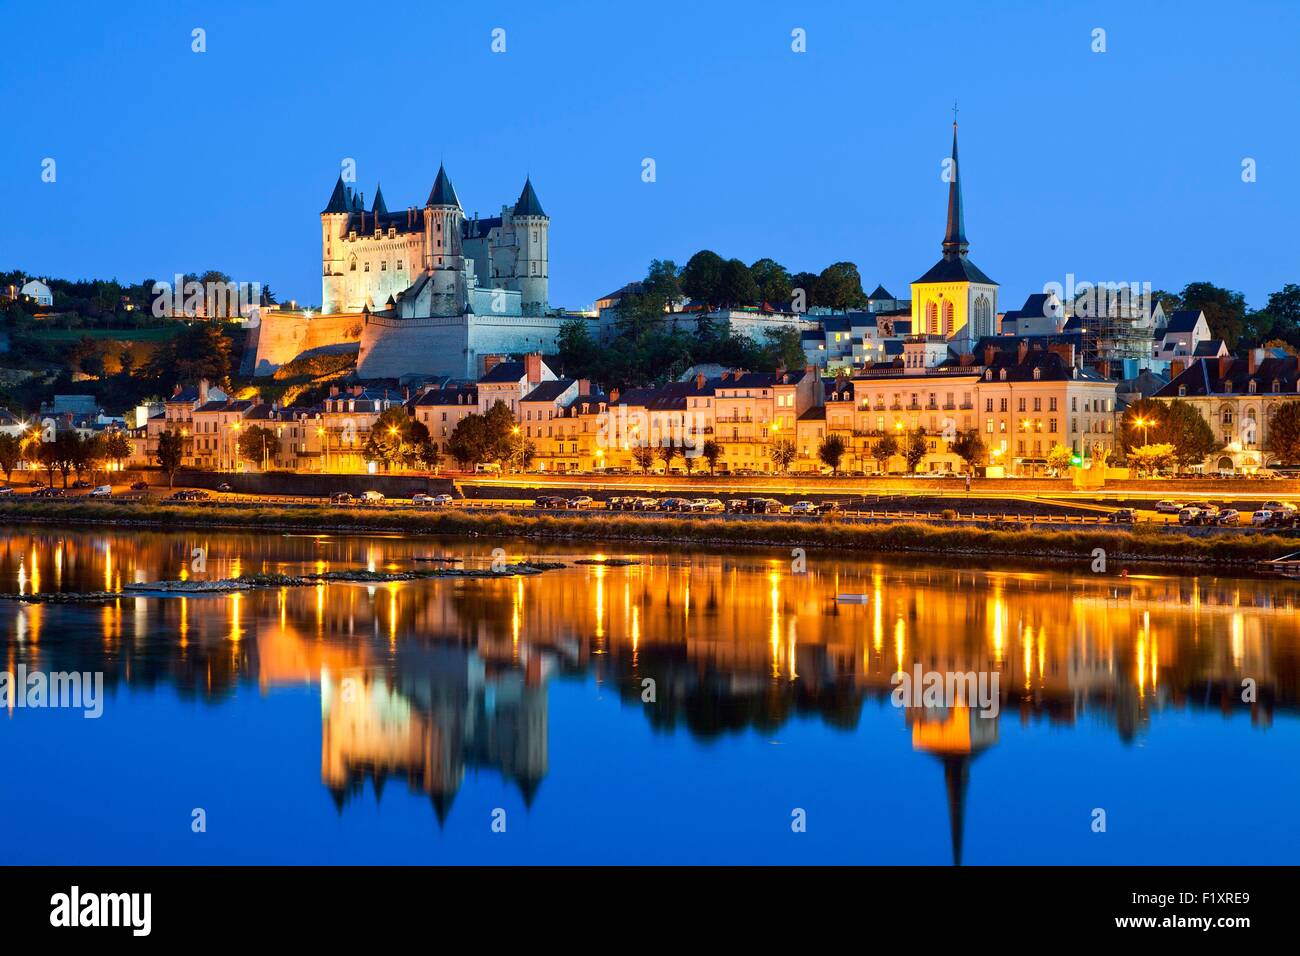 La France, dans le Maine et Loire, Vallée de la Loire classée au Patrimoine Mondial de l'UNESCO, Saumur, château de Saumur le long de la Loire Banque D'Images